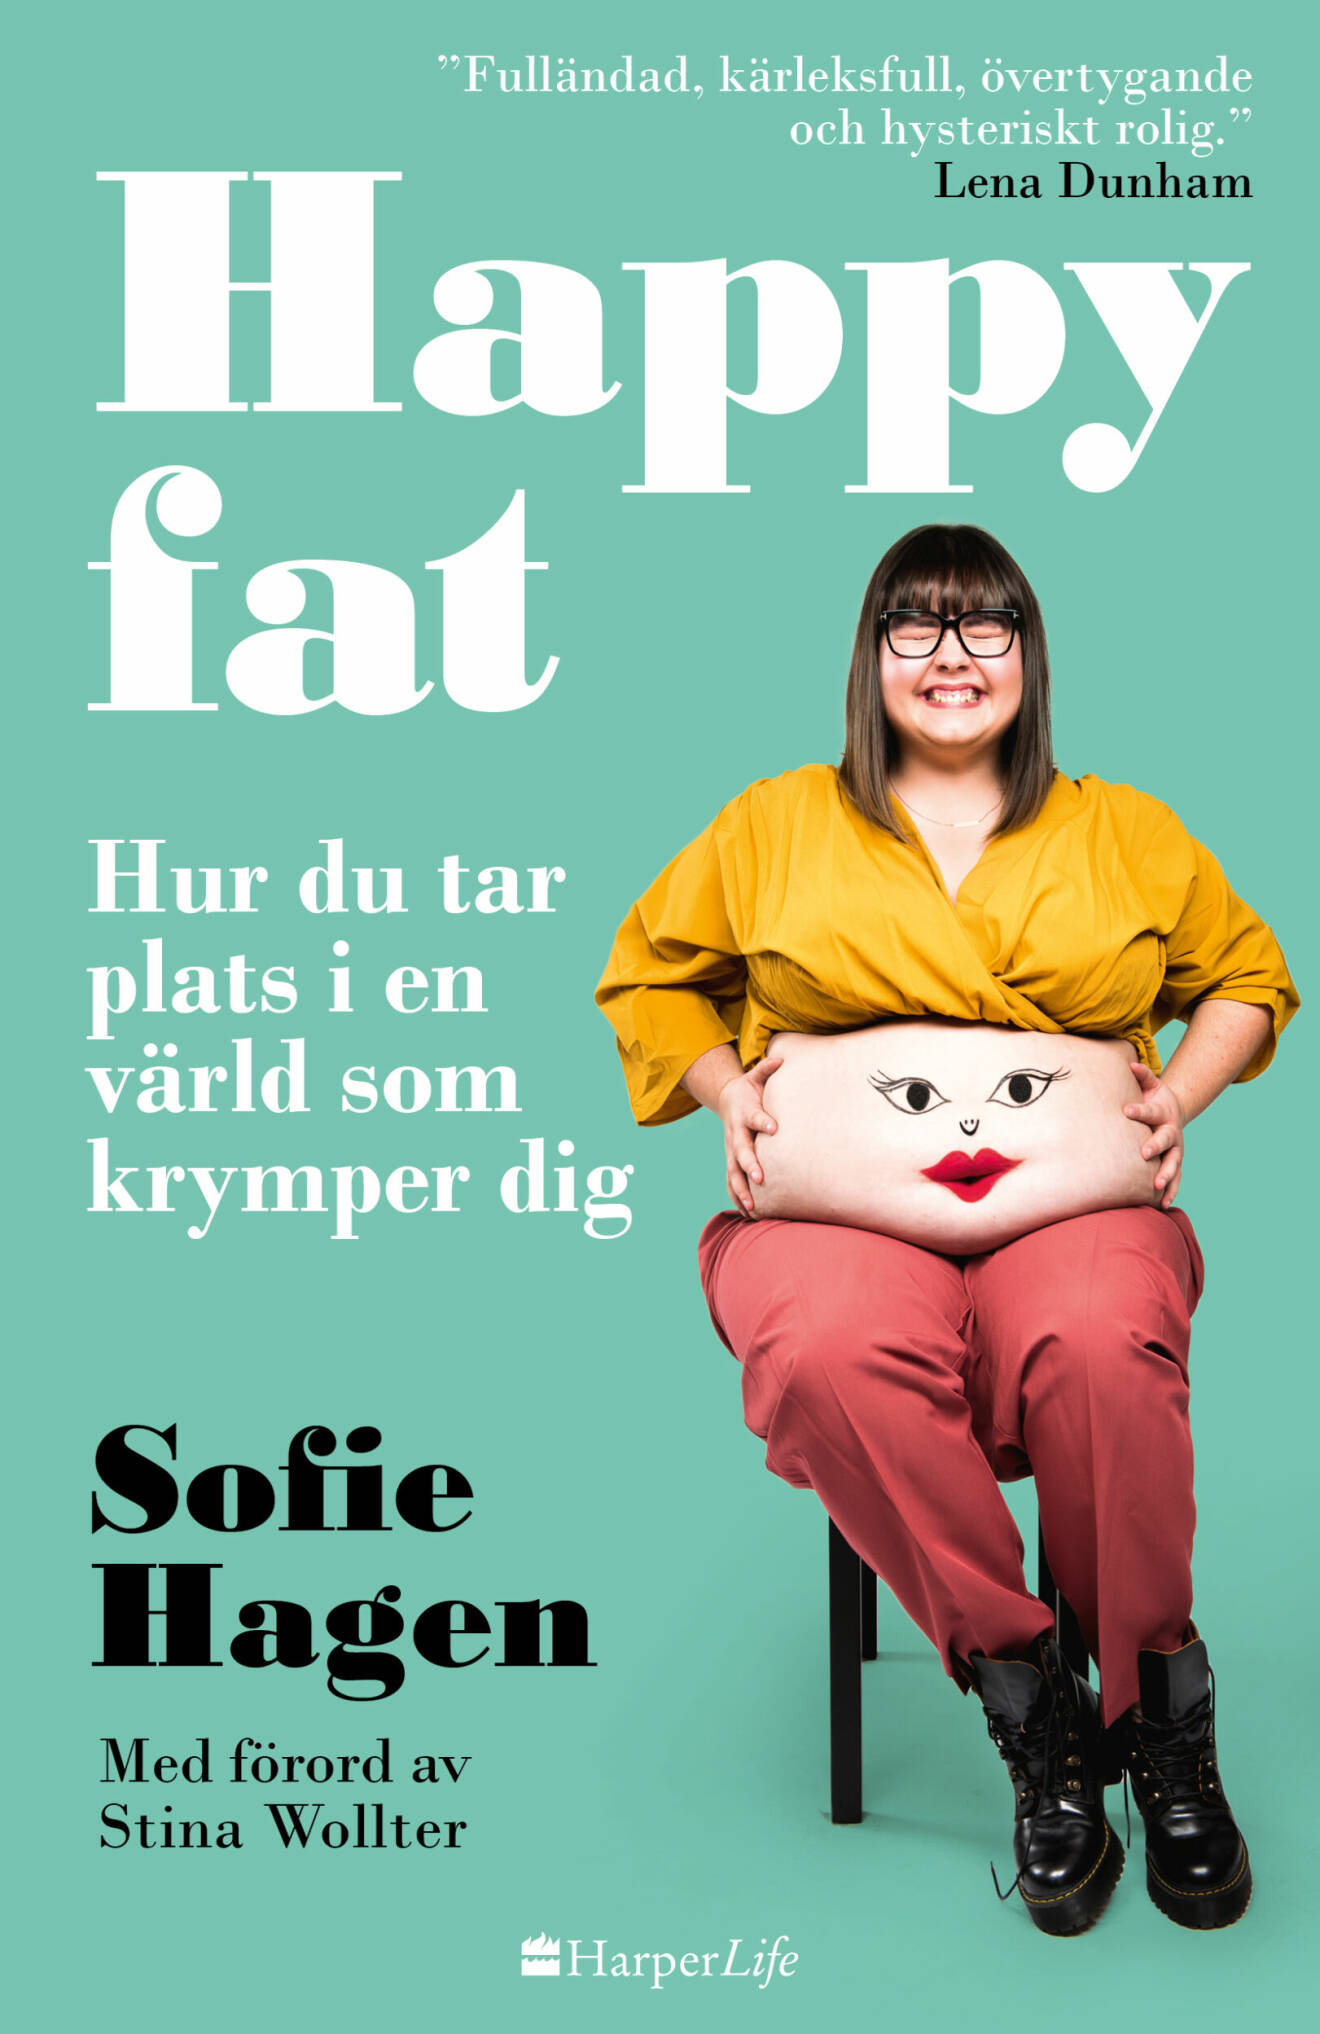 Bokomslag på boken Happy fat, hur du tar plats i en värld som krymper dig, av Sofie Hagen